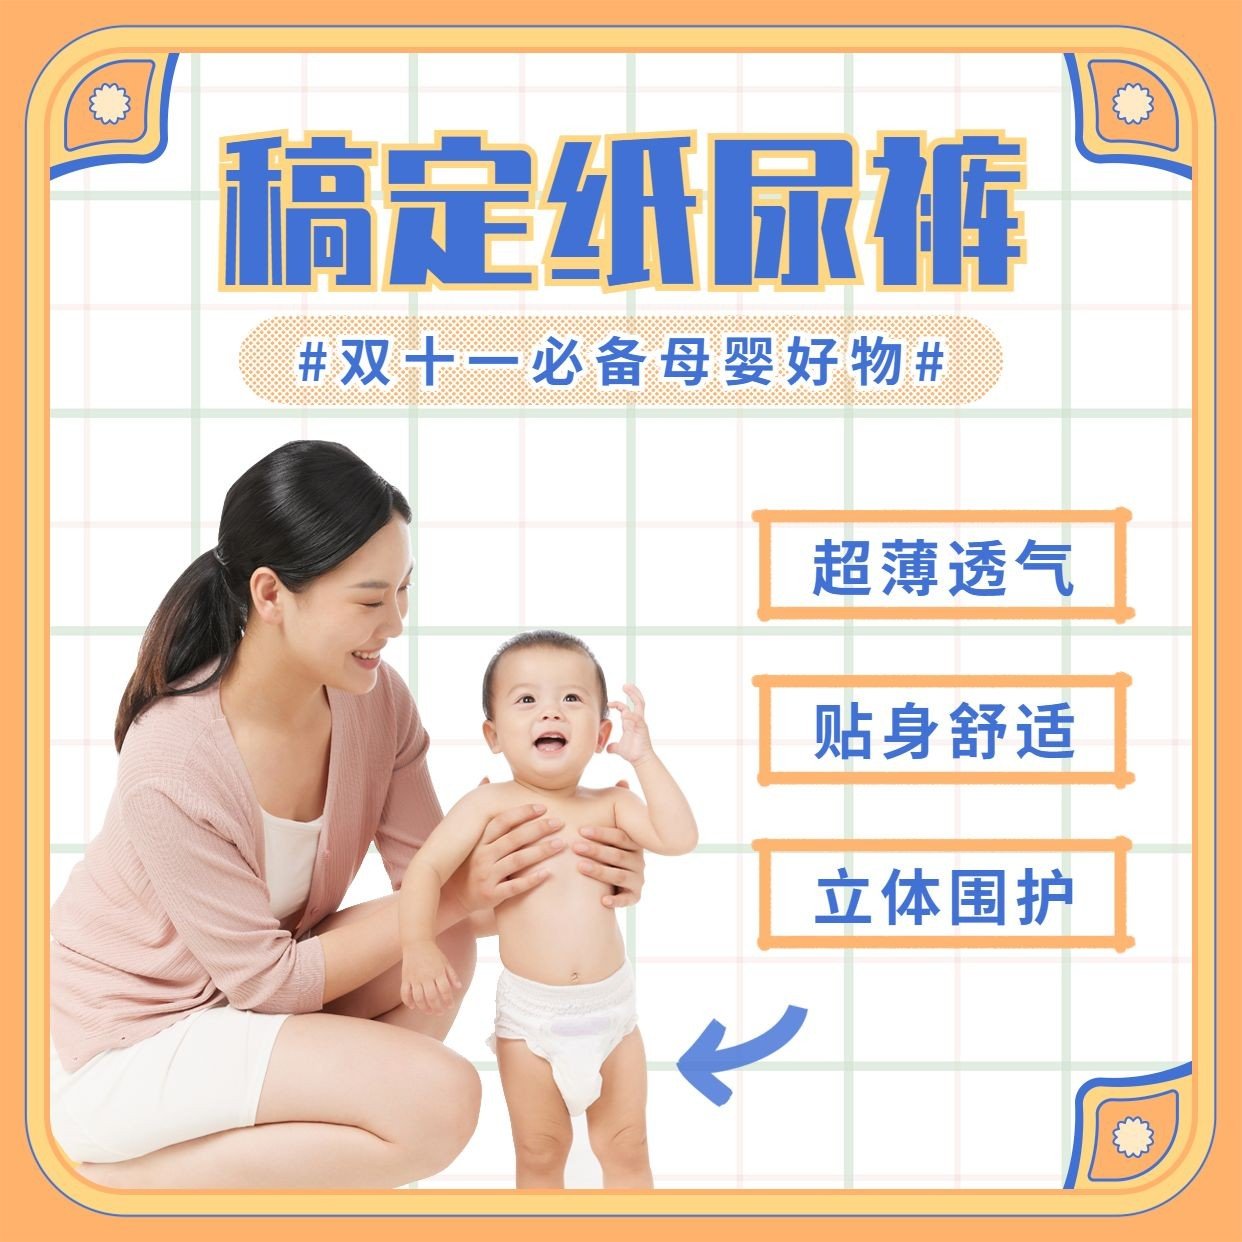 双十一母婴亲子纸尿裤产品展示方形海报预览效果